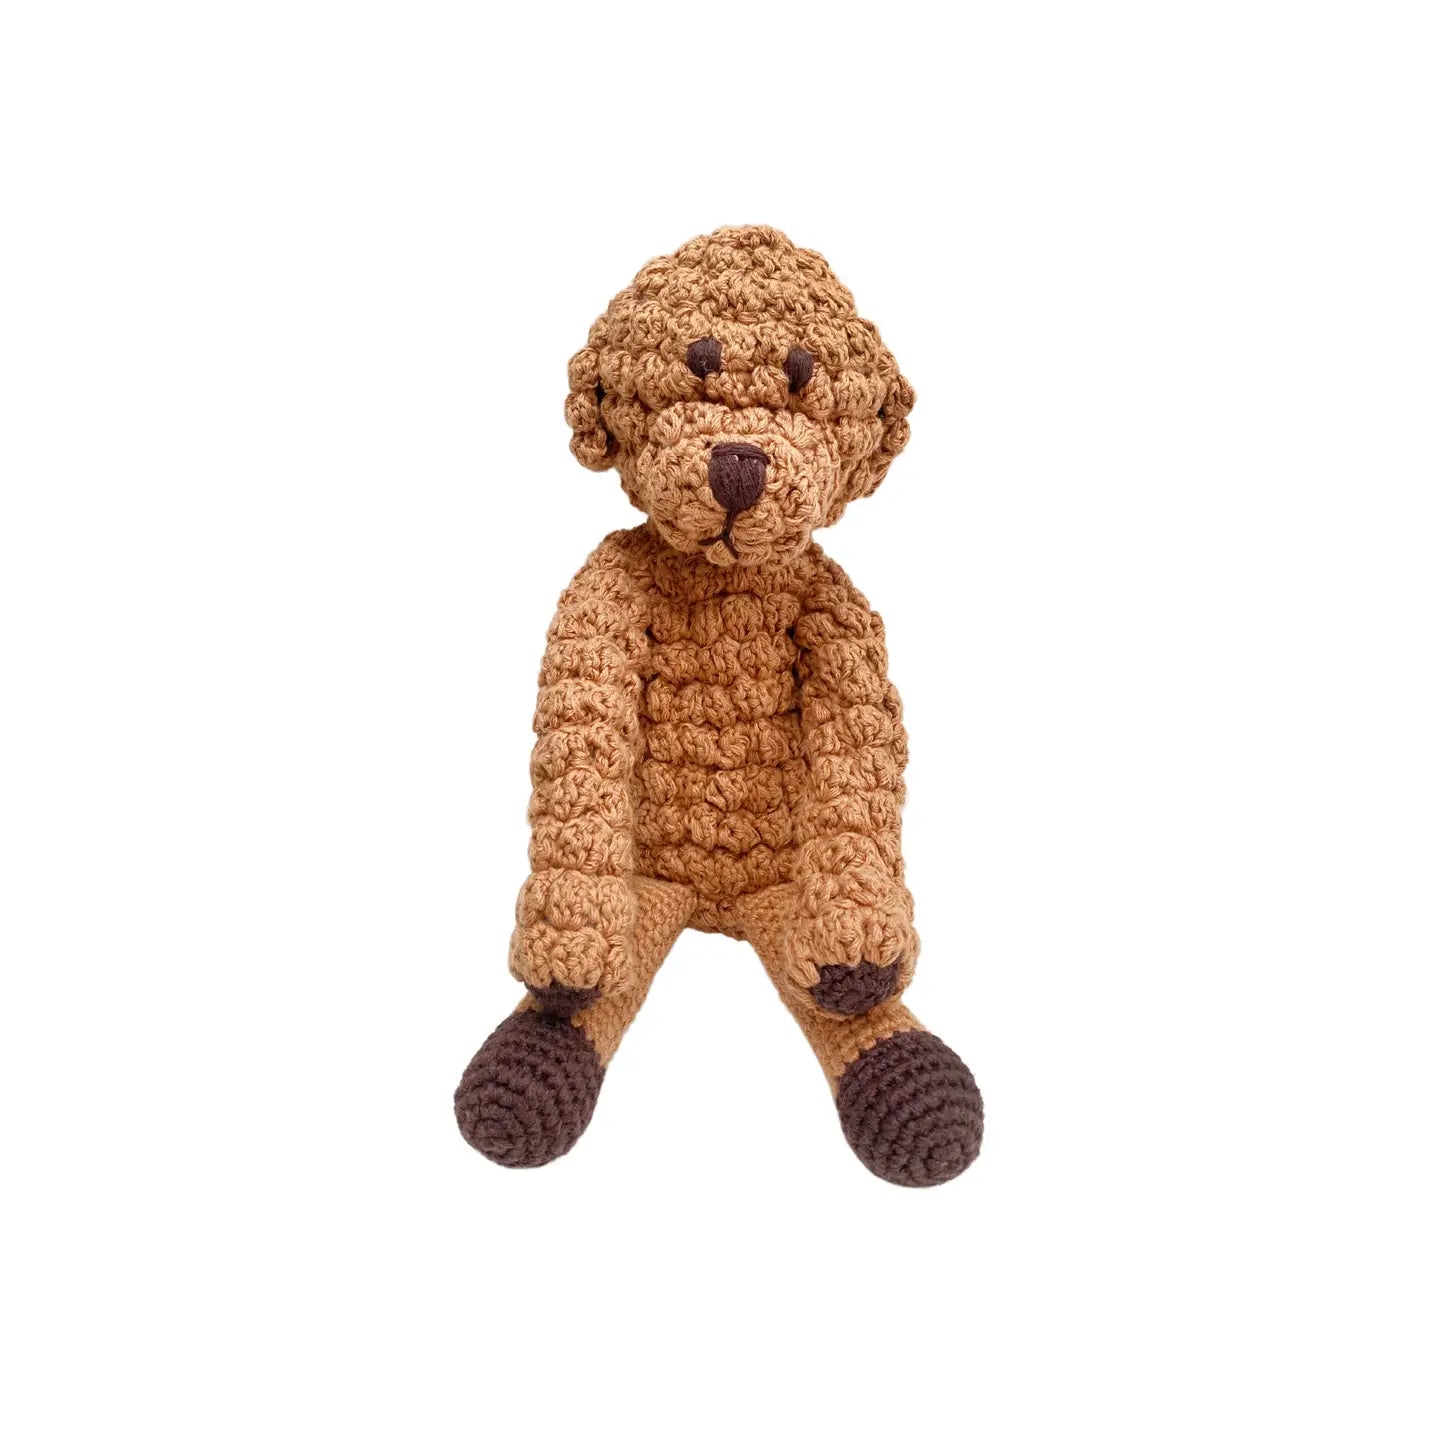 Plush Goldendoodle Dog - Kids Toy